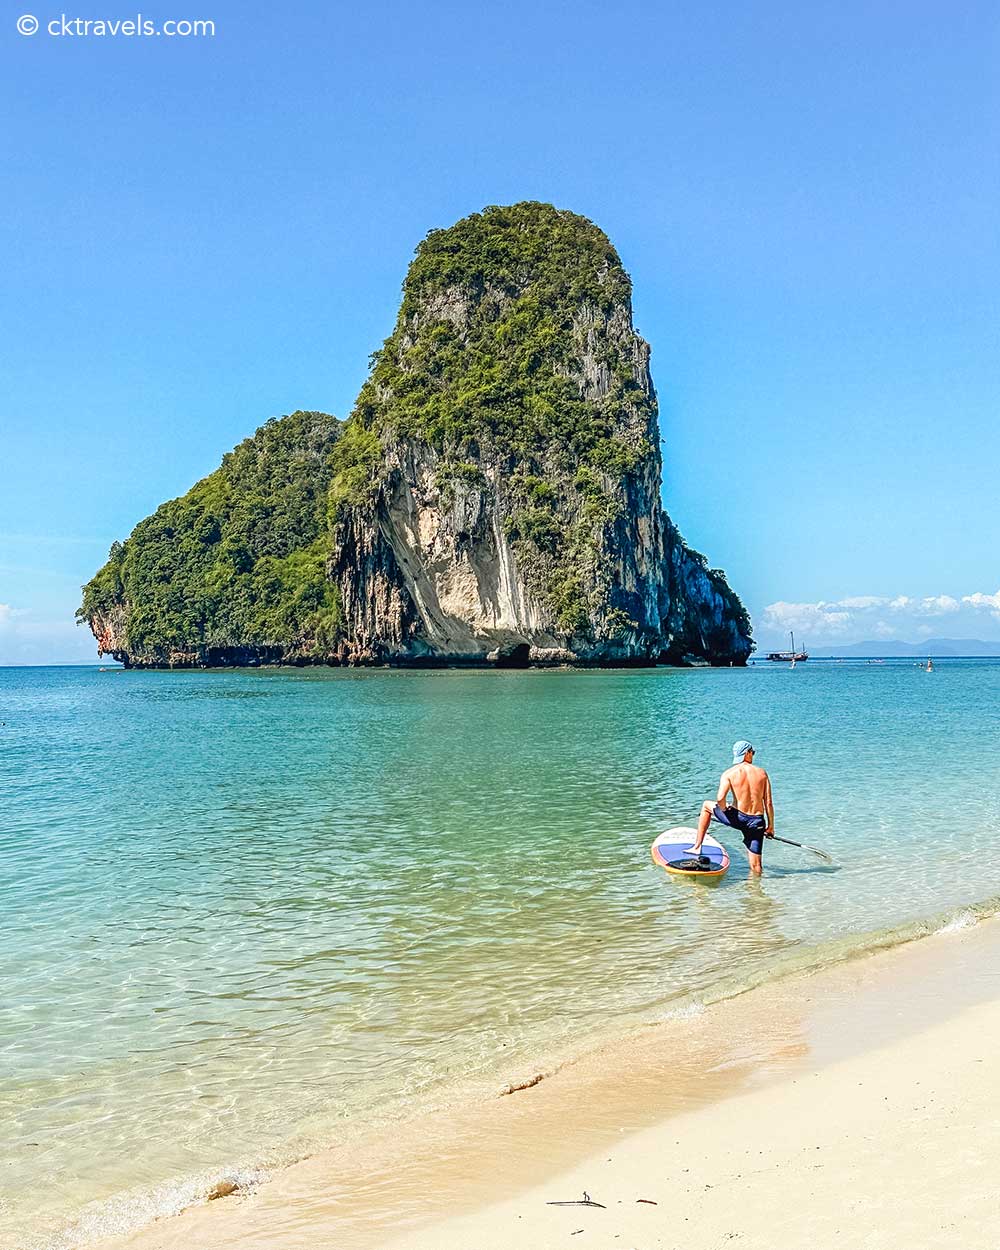 Paddle boarding at Phra Nang Cave Beach Krabi Thailand